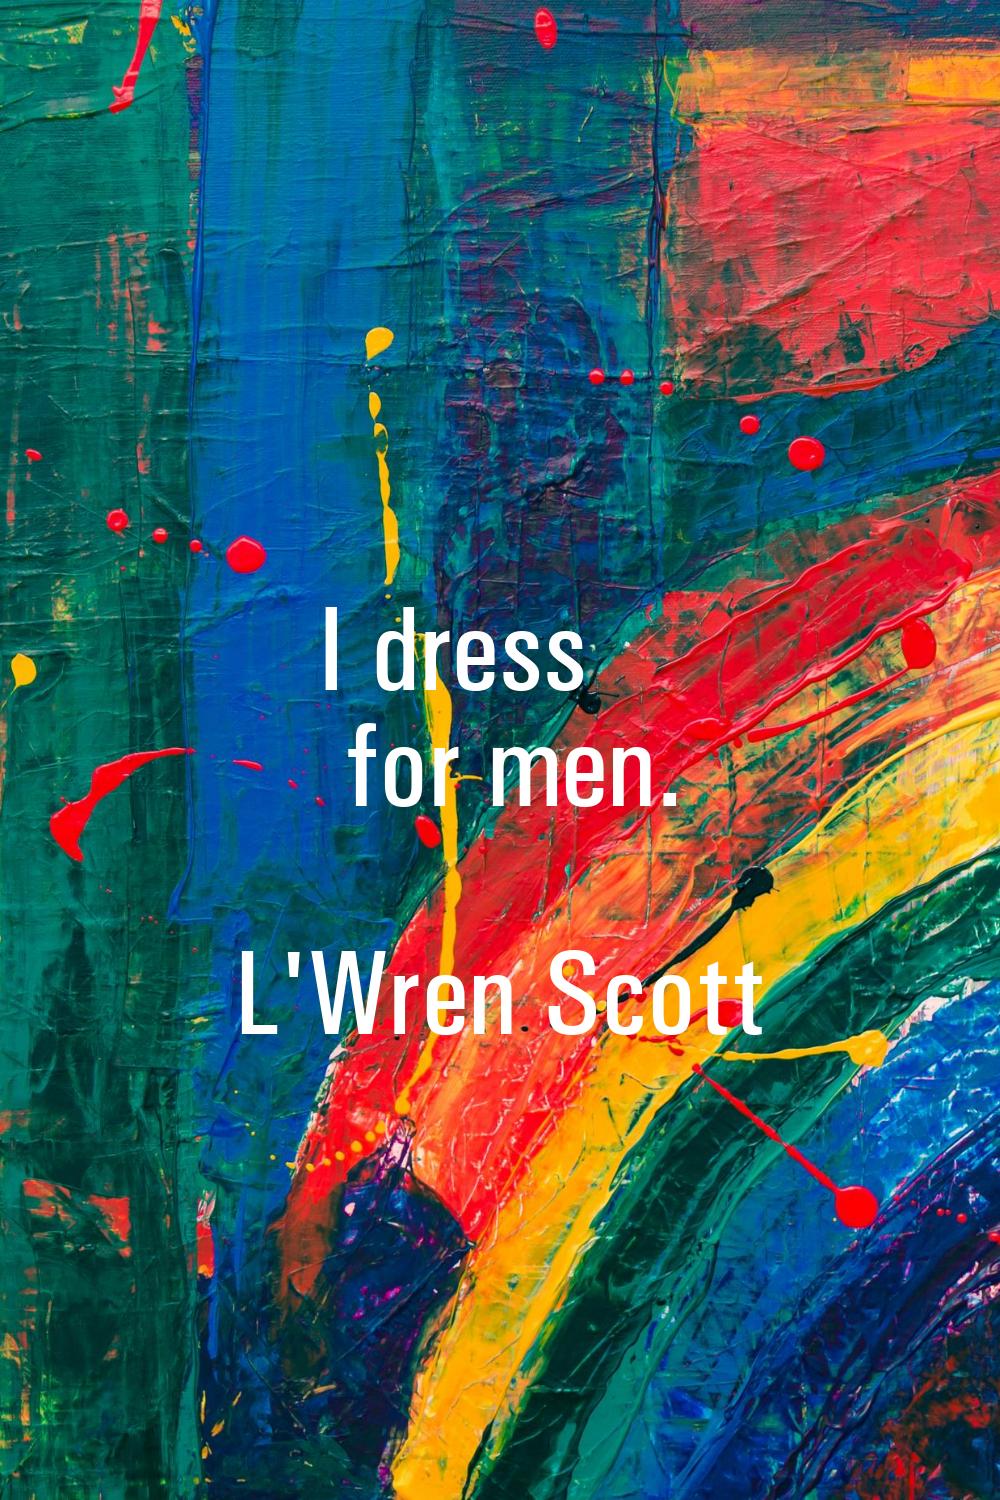 I dress for men.